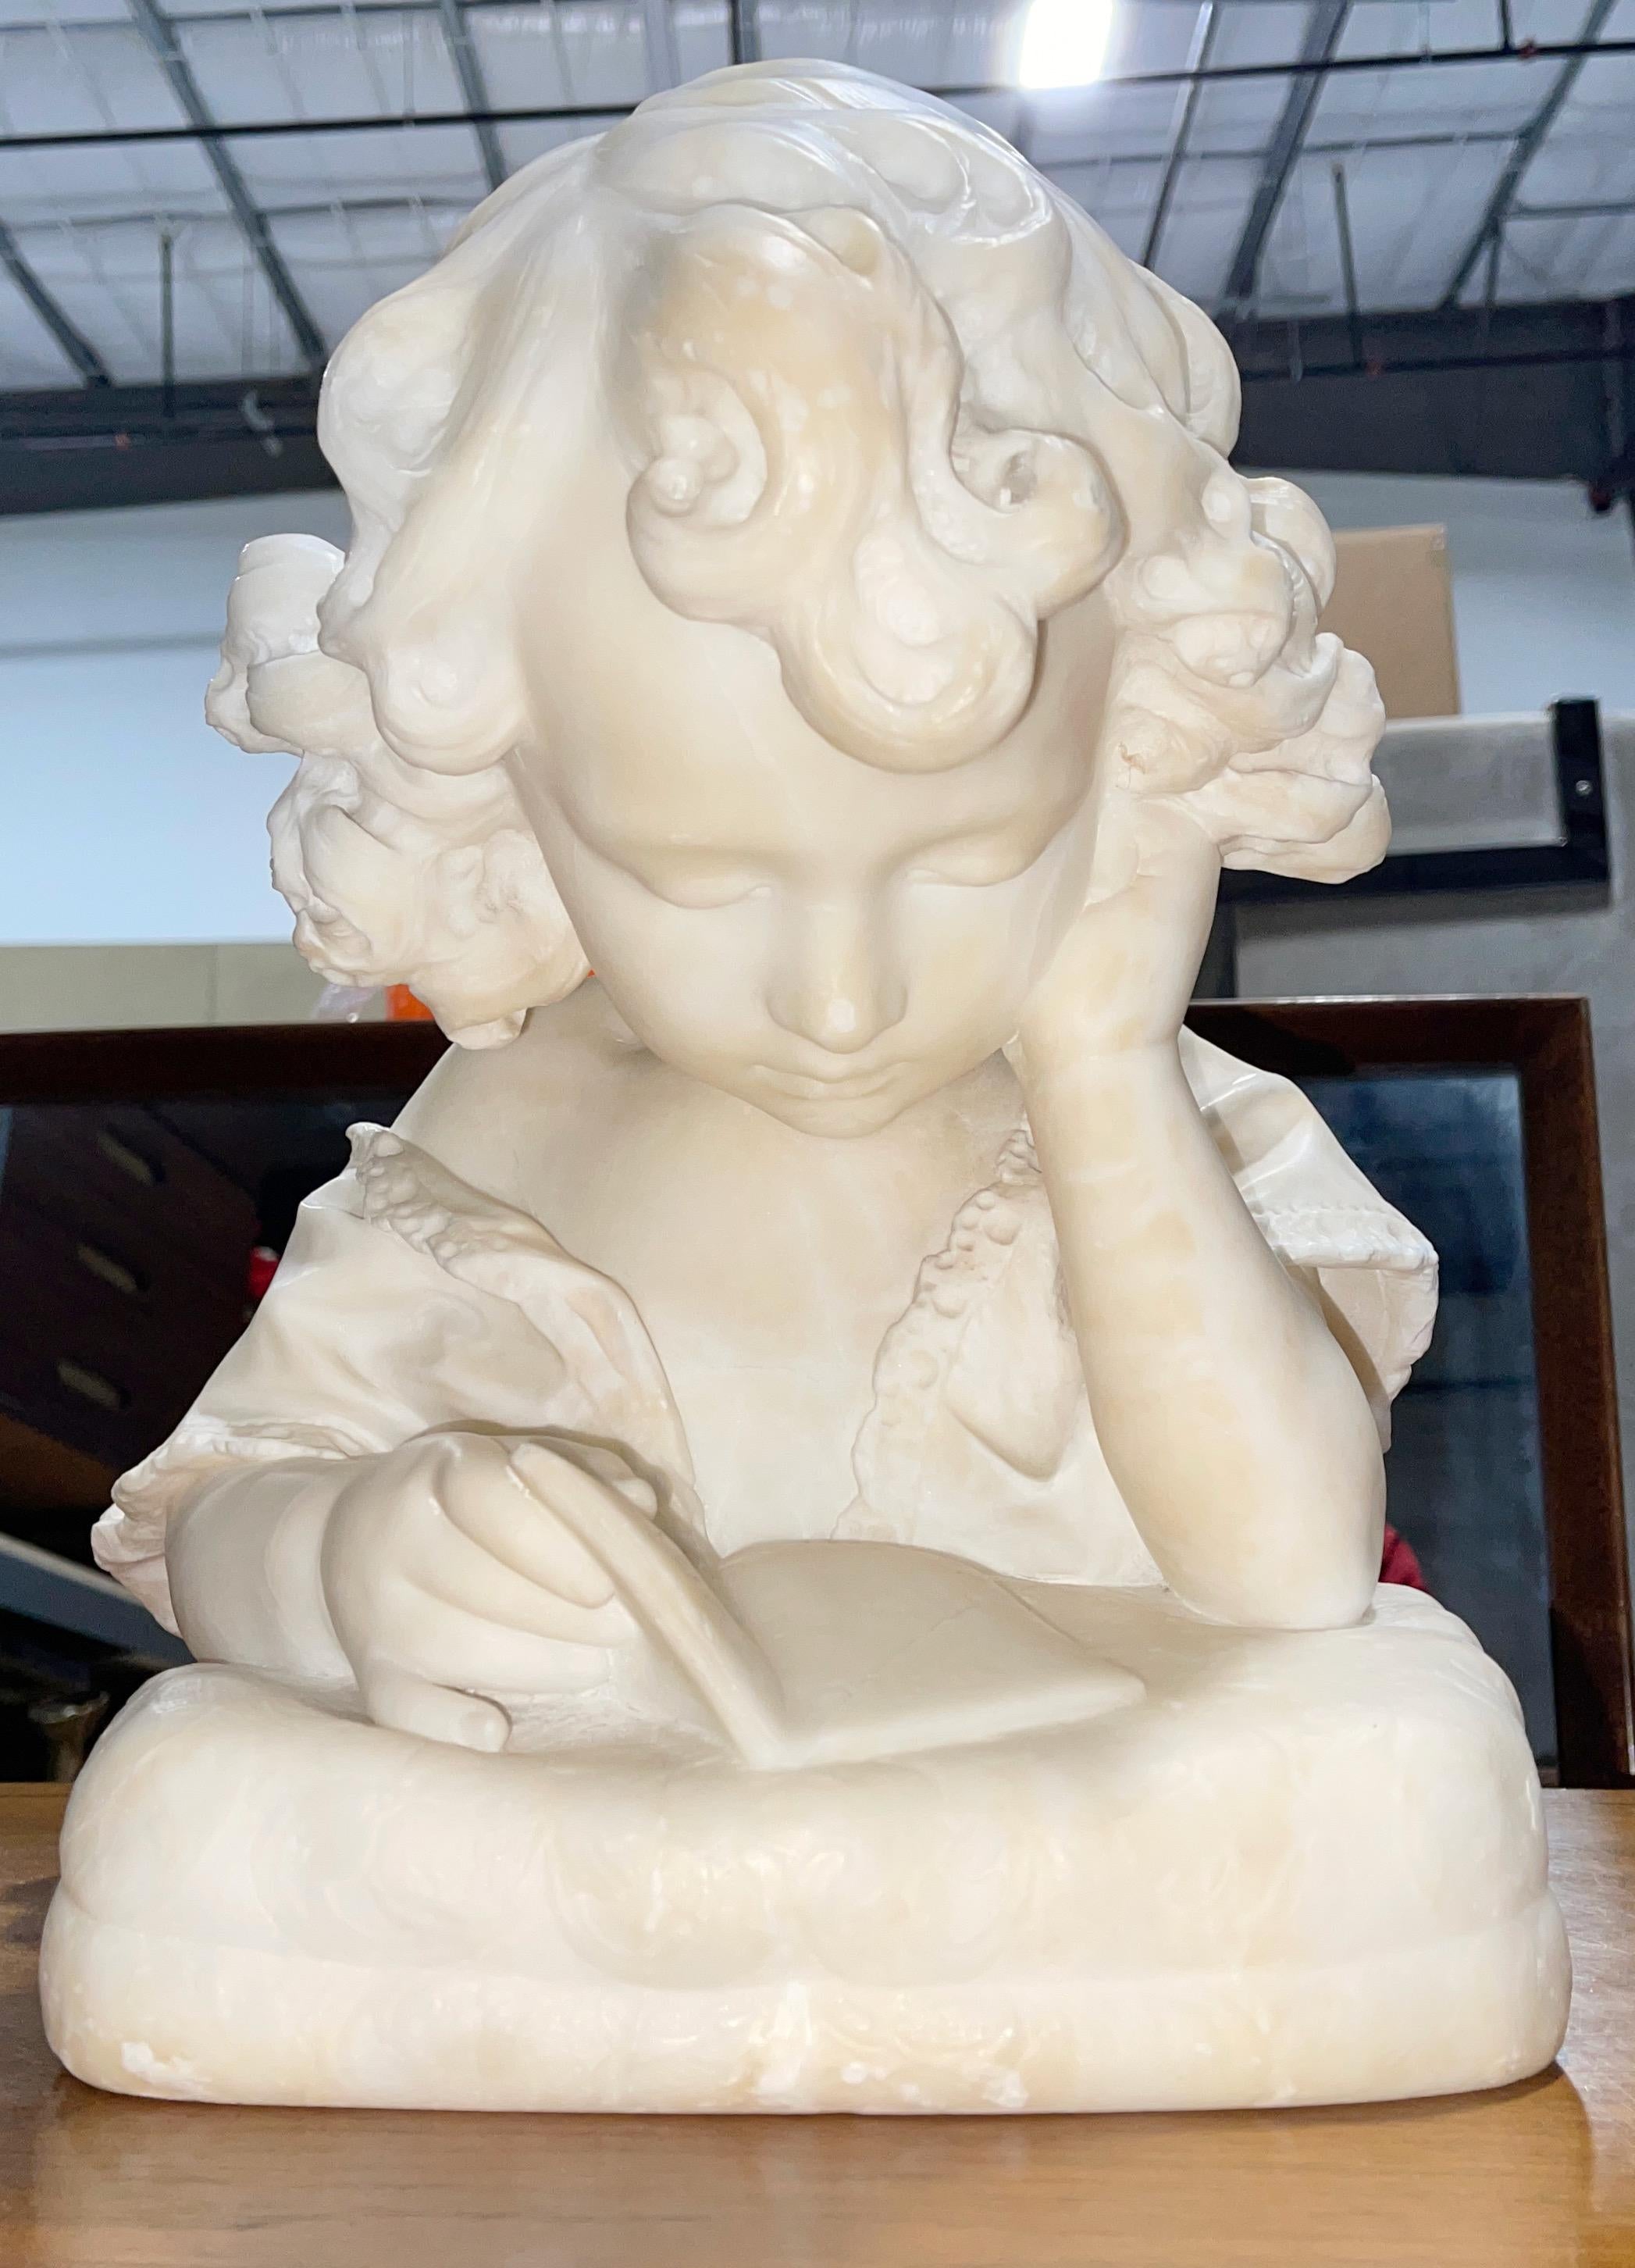 Buste en albâtre italien du début du 20e siècle représentant une petite fille lisant un livre et reposant sur un piédestal en noyer d'époque. Le buste n'est apparemment pas signé. 

Buste
Hauteur 14